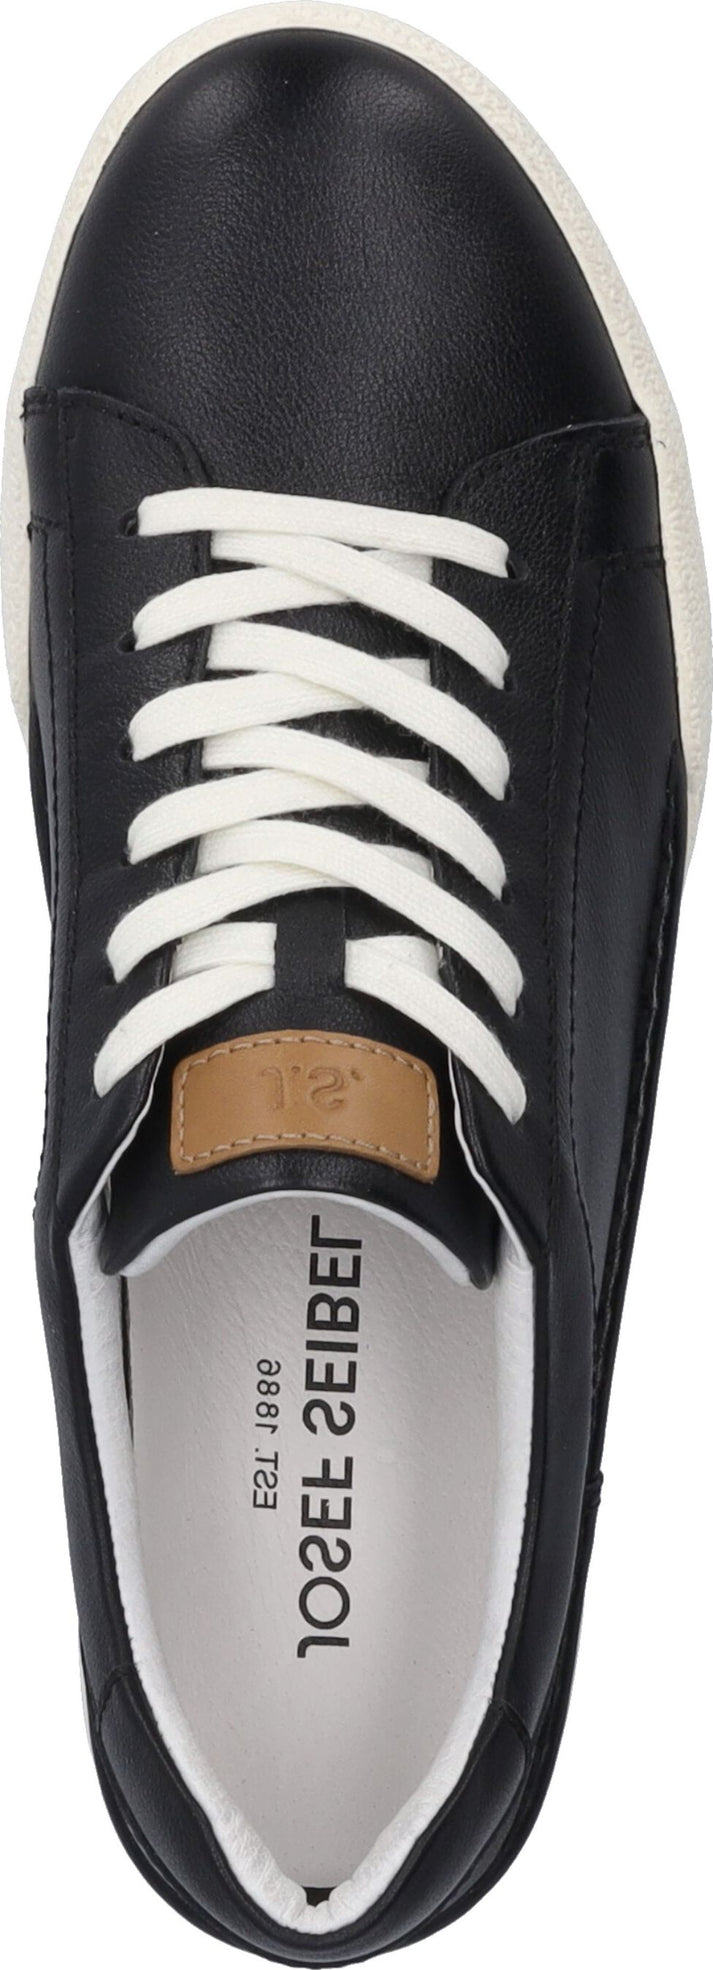 Josef Seibel Shoes Claire 01 Black